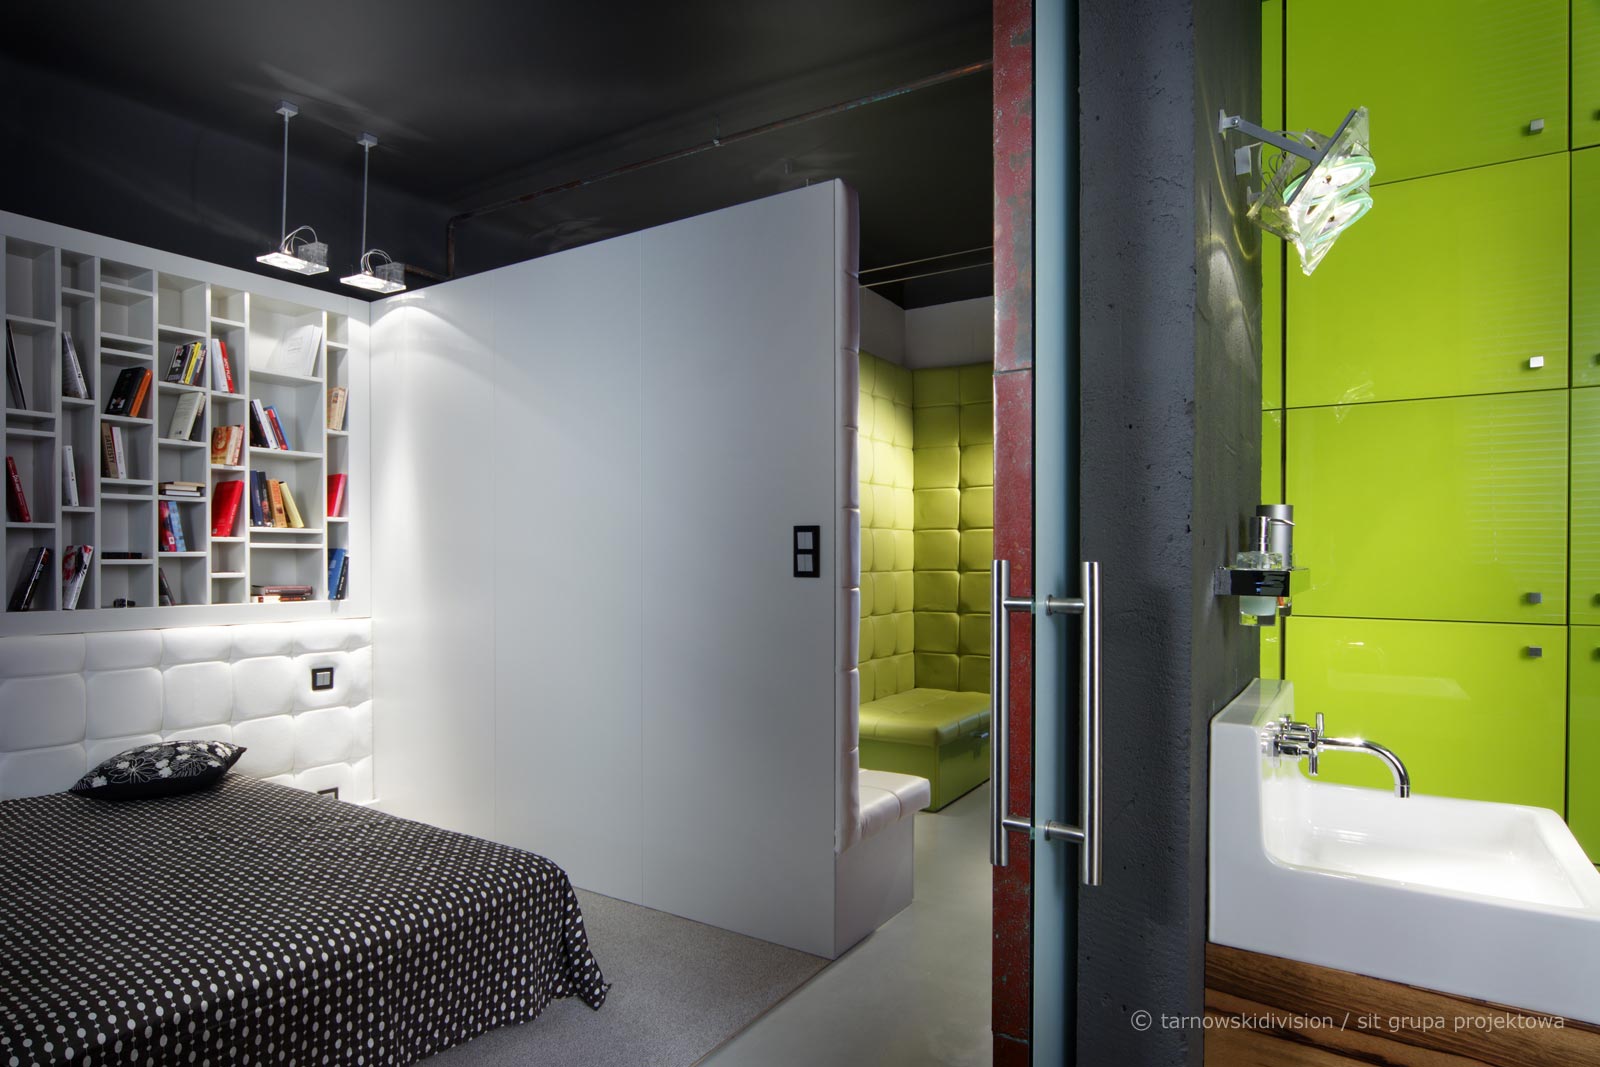 aranżacja wnętrz warszawa, projekt łazienki, projekt łazienki loft, projekt nowoczesnej łazienki, projekt kolorowej łazienki, ściana betonowa w łazience, drzwi szklane do łazienki, intensywny kolor w łazience, nietuzinkowa łazienka, kolor zielony w łazience, projekt nowoczesnej sypialni, projekt minimalistycznej sypialni, czarny sufit w sypialni, aranżacja wnętrz warszawa, architekt wnętrz warszawa, dobry architekt wnętrz warszawa, dobry projektant wnętrz warszawa, eleganckie wnętrze, najlepsi architekci wnętrz warszawa, najlepsi projektanci wnętrz warszawa, nowoczesne wnętrza warszawa, pracownia architektury wnętrz warszawa, projekt mieszkania warszawa, projektant wnętrz nowoczesnych warszawa, projektant wnętrz warszawa, projektowanie i aranżacja wnętrz warszawa, projektowanie wnętrz warszawa, projekty luksusowych apartamentów, studio projektowania wnętrz warszawa, interior design warsaw, bathroom design, loft bathroom design, modern bathroom design, colorful bathroom design, concrete wall in the bathroom, glass door to the bathroom, intense color in the bathroom, unusual bathroom, green color in the bathroom, modern bedroom design, minimalist bedroom design, black ceiling in the bedroom, interior architect warsaw, best interior architects warsaw, modern interiors warsaw, interior design studio warsaw, interior design and arrangement warsaw, luxury apartment designs,